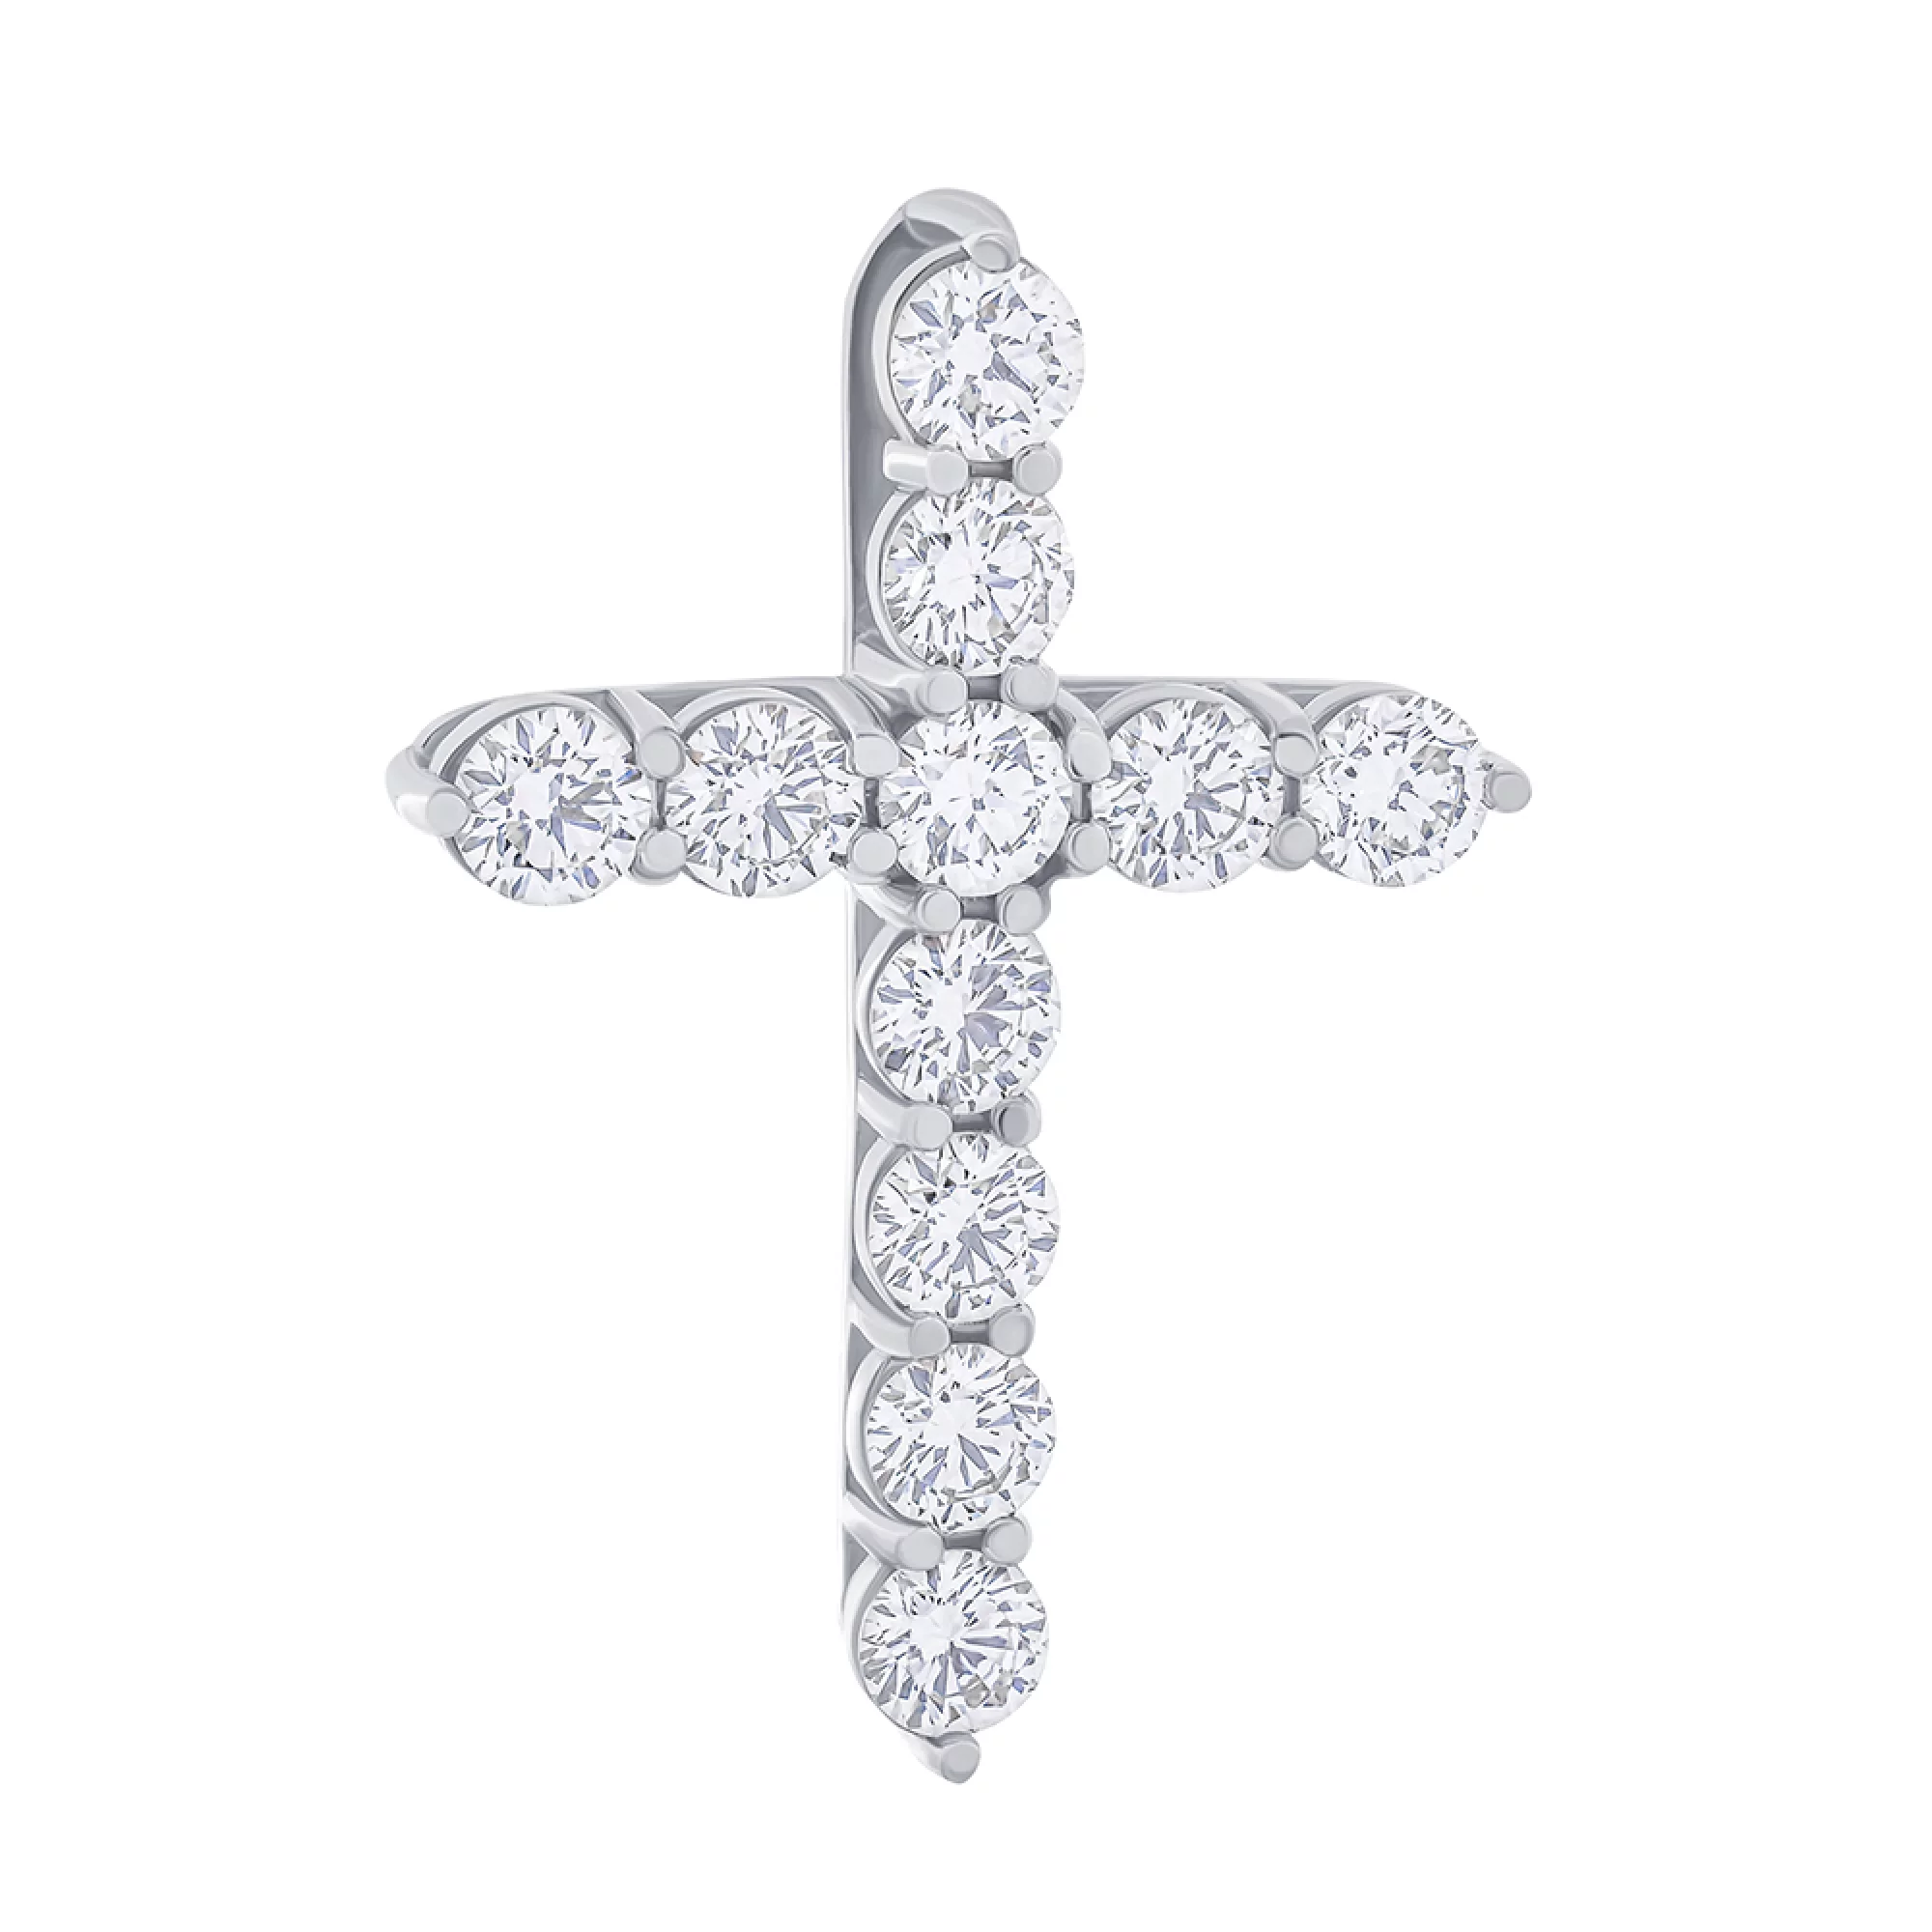 Крестик из белого золота с дорожкой бриллиантов - 1509032 – изображение 1